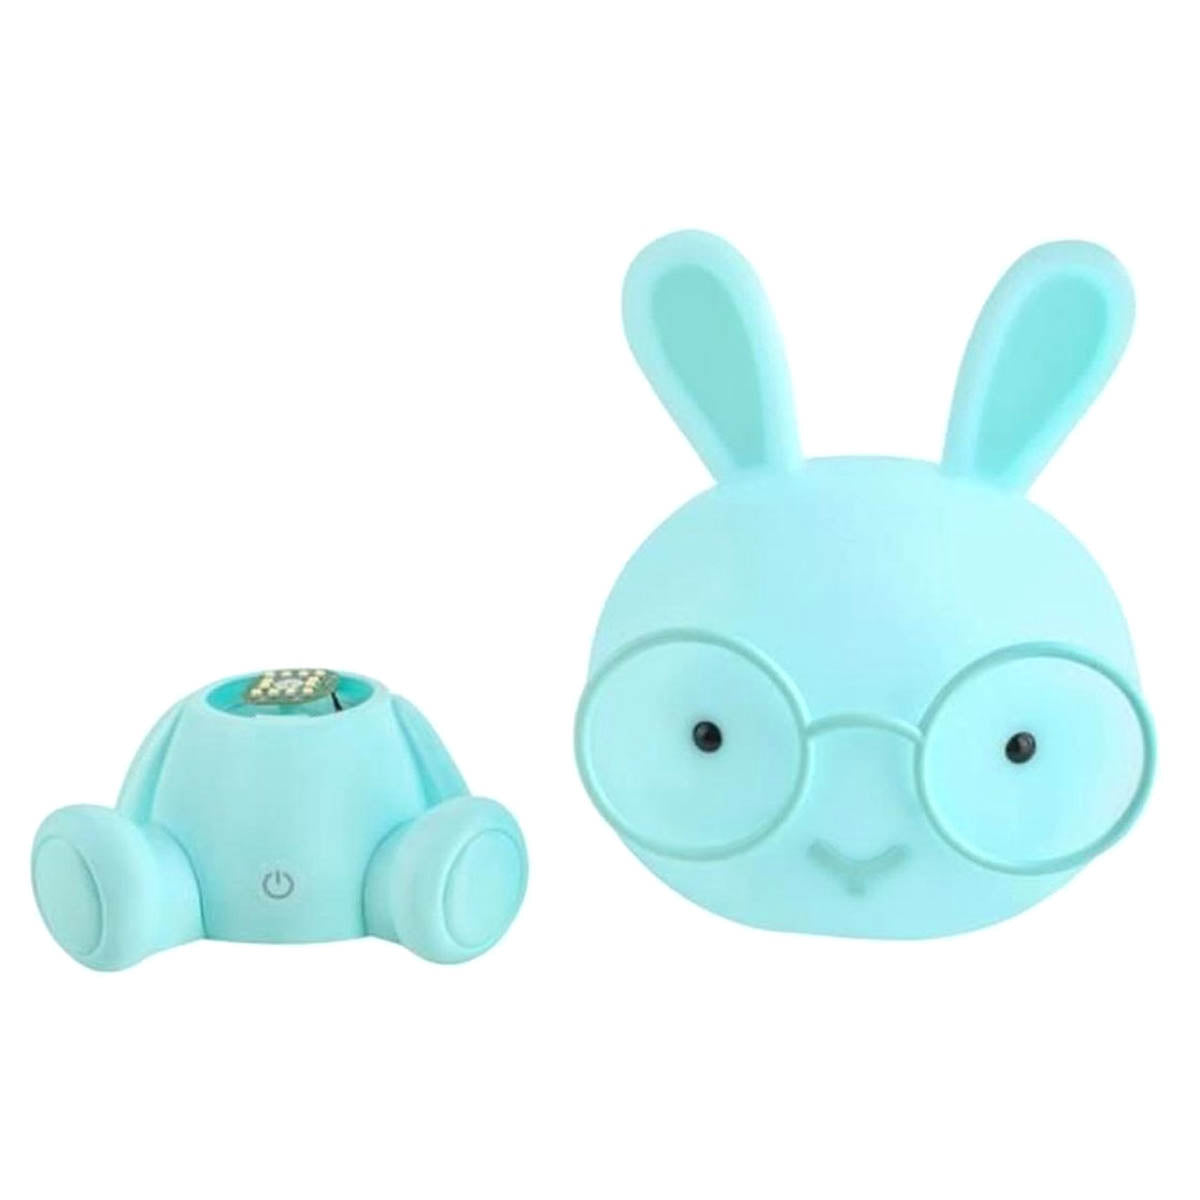 Ariko XL Bär Tischlampe Kinderzimmer Babyzimmer - Nachtlicht - LED dimmbar - 3 Stufen dimmbar - Blau - Teddybär